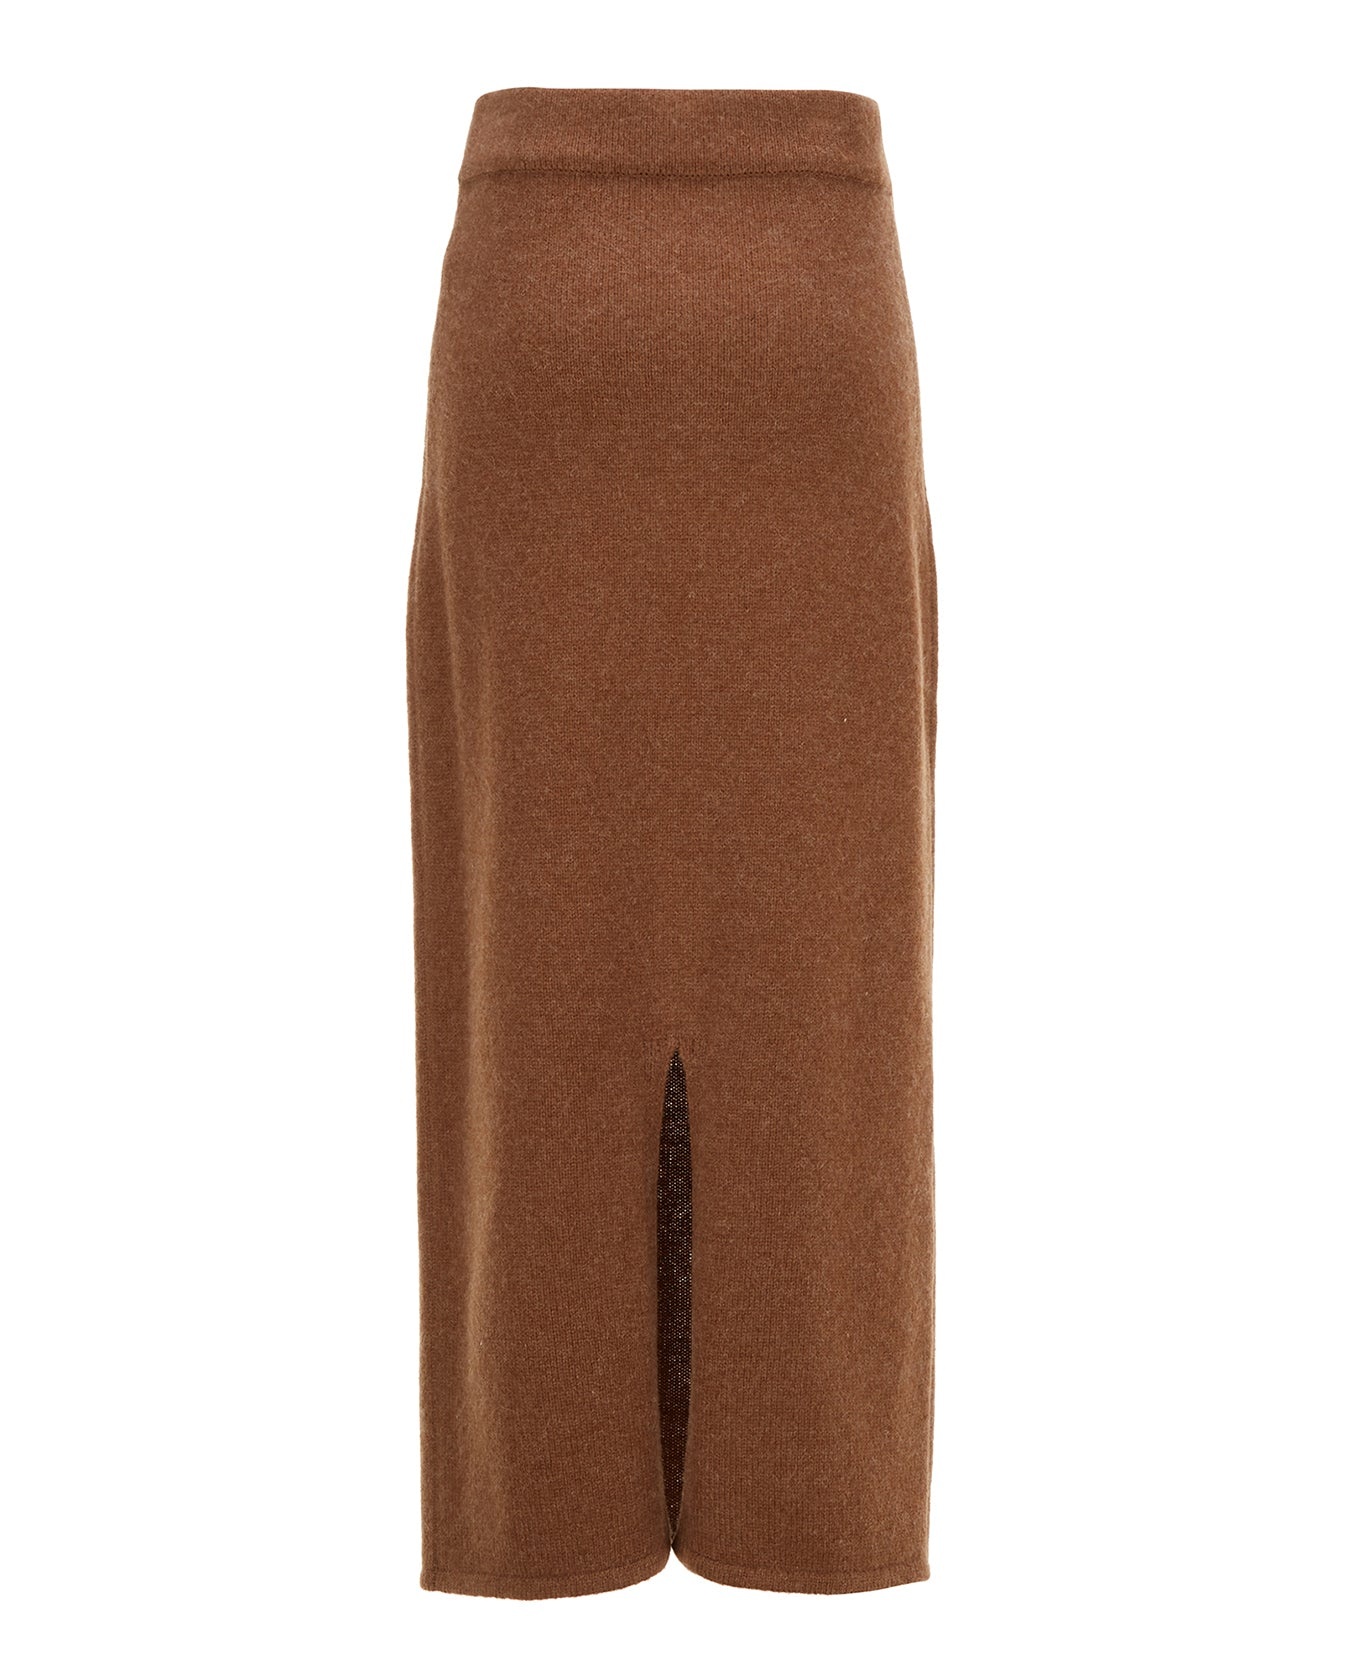 Alpaca Blend Long Skirt - Brown - 5